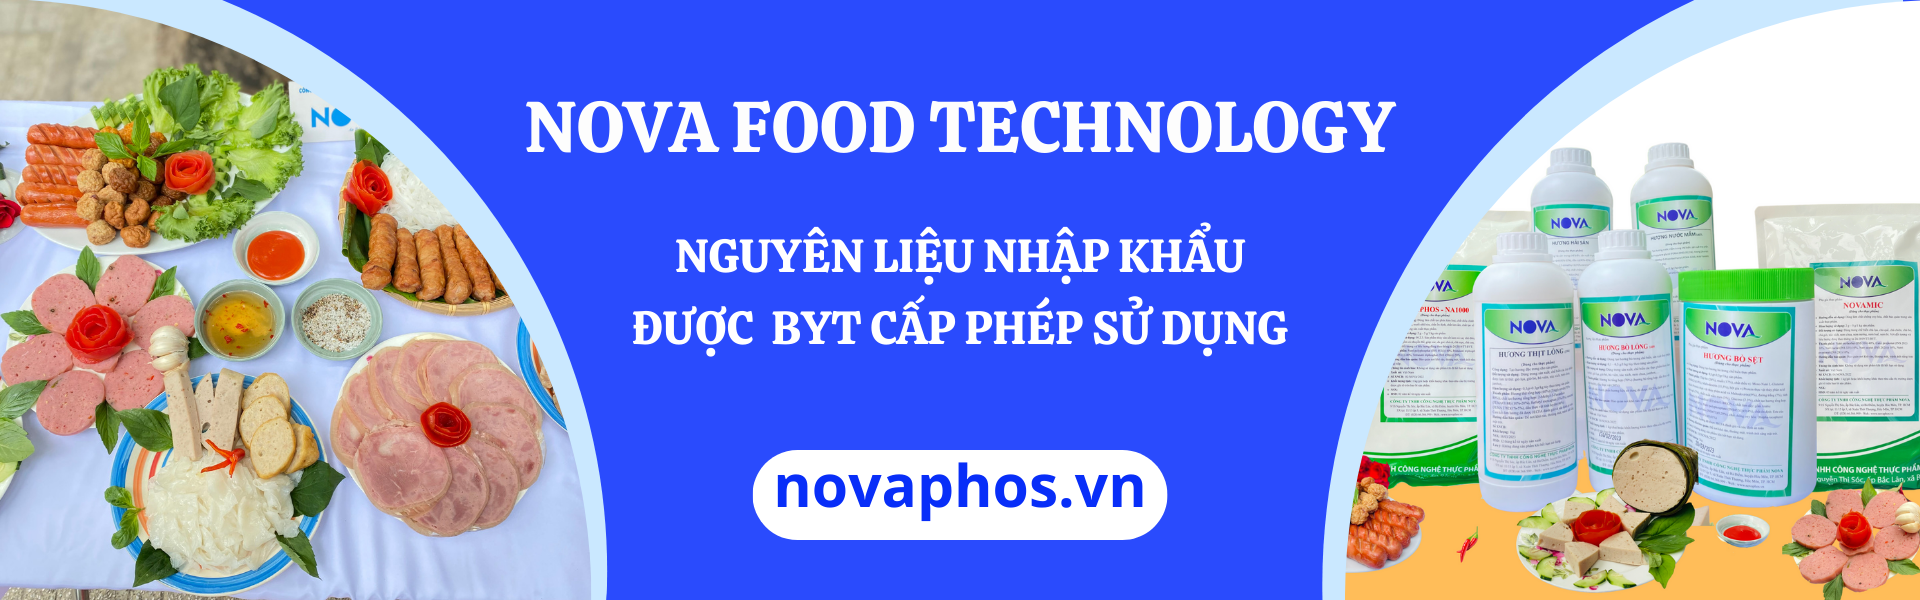 Sản phẩm của Công ty Nova Food Technology 